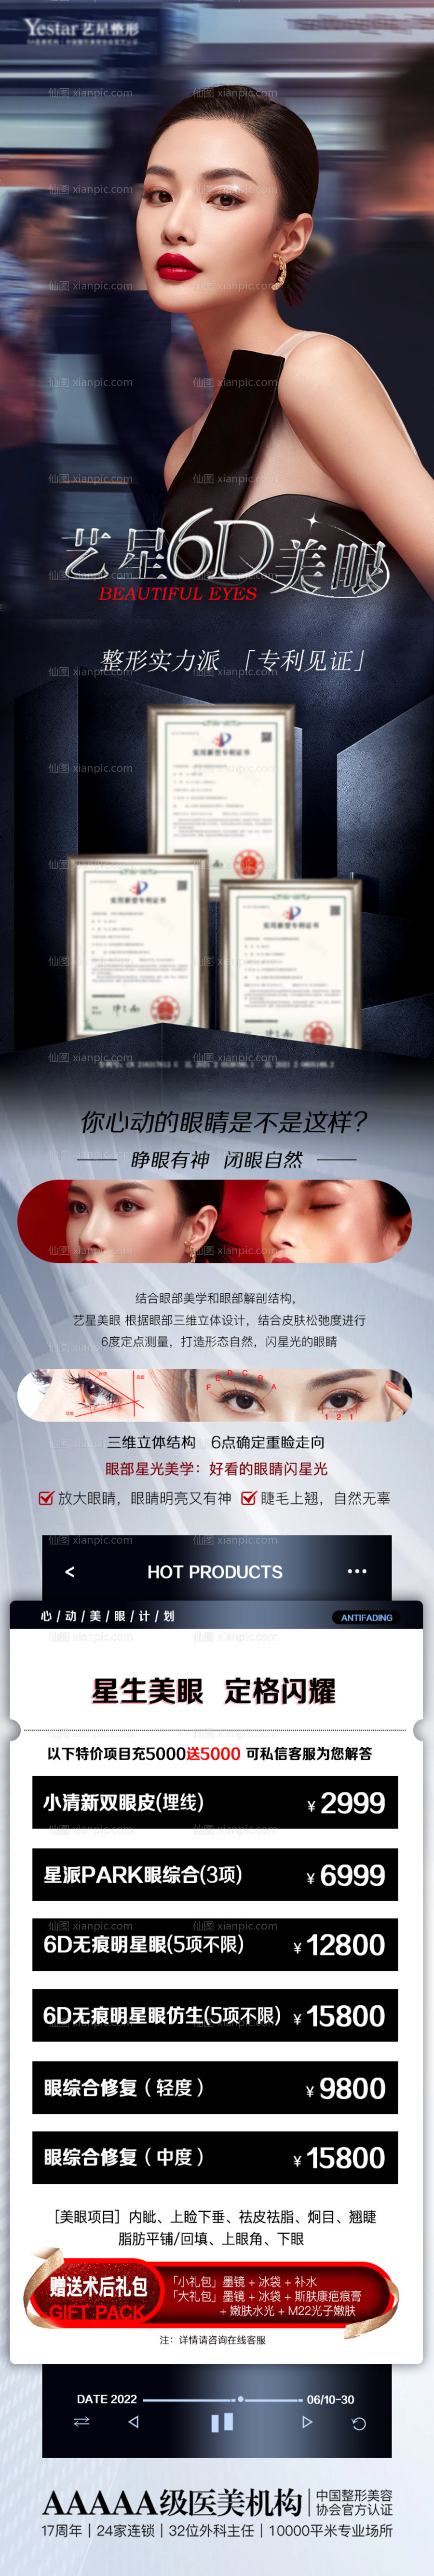 素材乐-双眼皮整形促销宣传海报长图